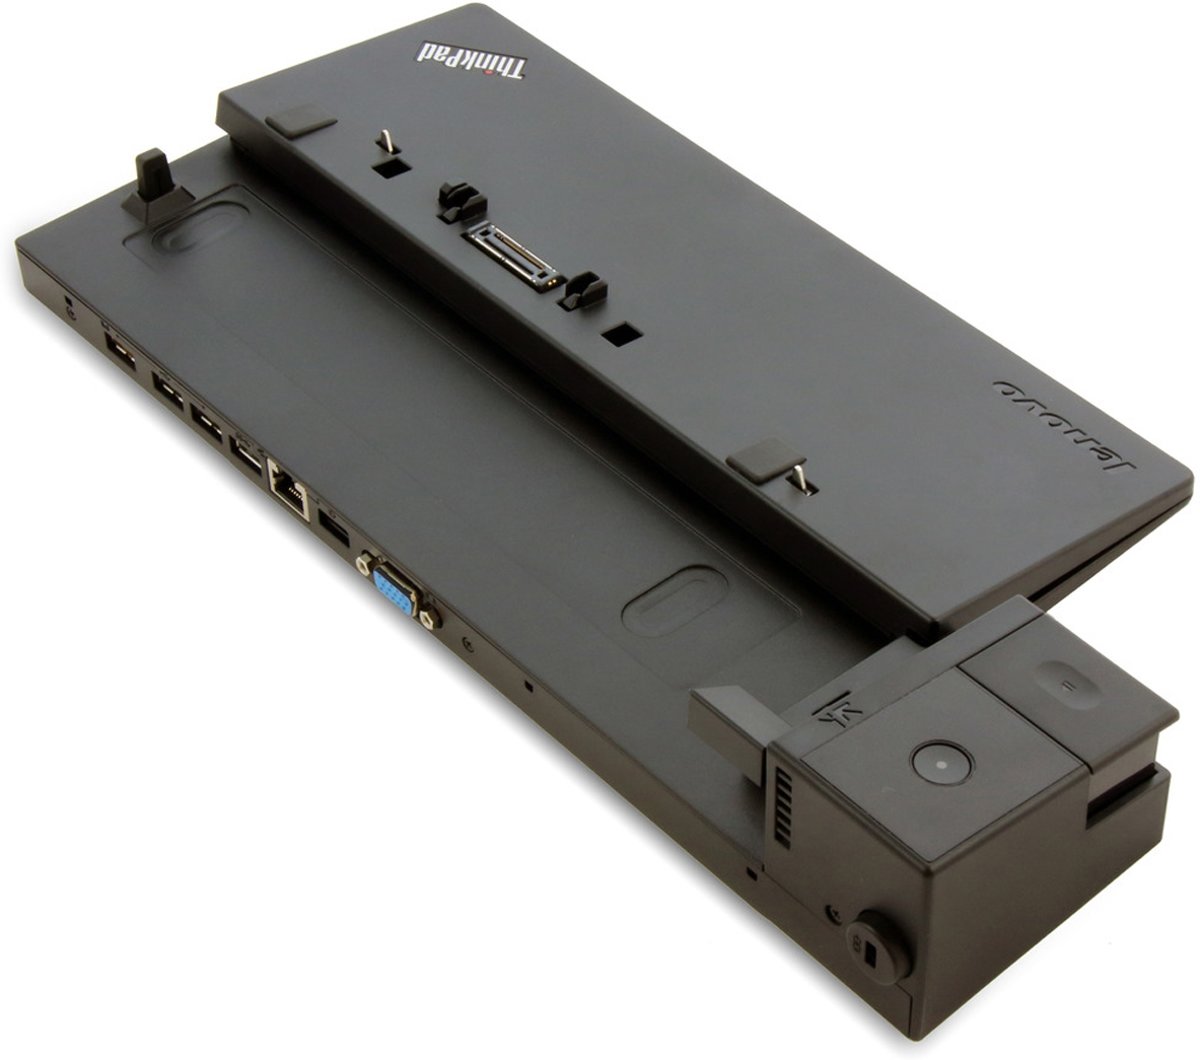 Lenovo Basic Dock USB 3.0 (3.1 Gen 1) Type-A Zwart